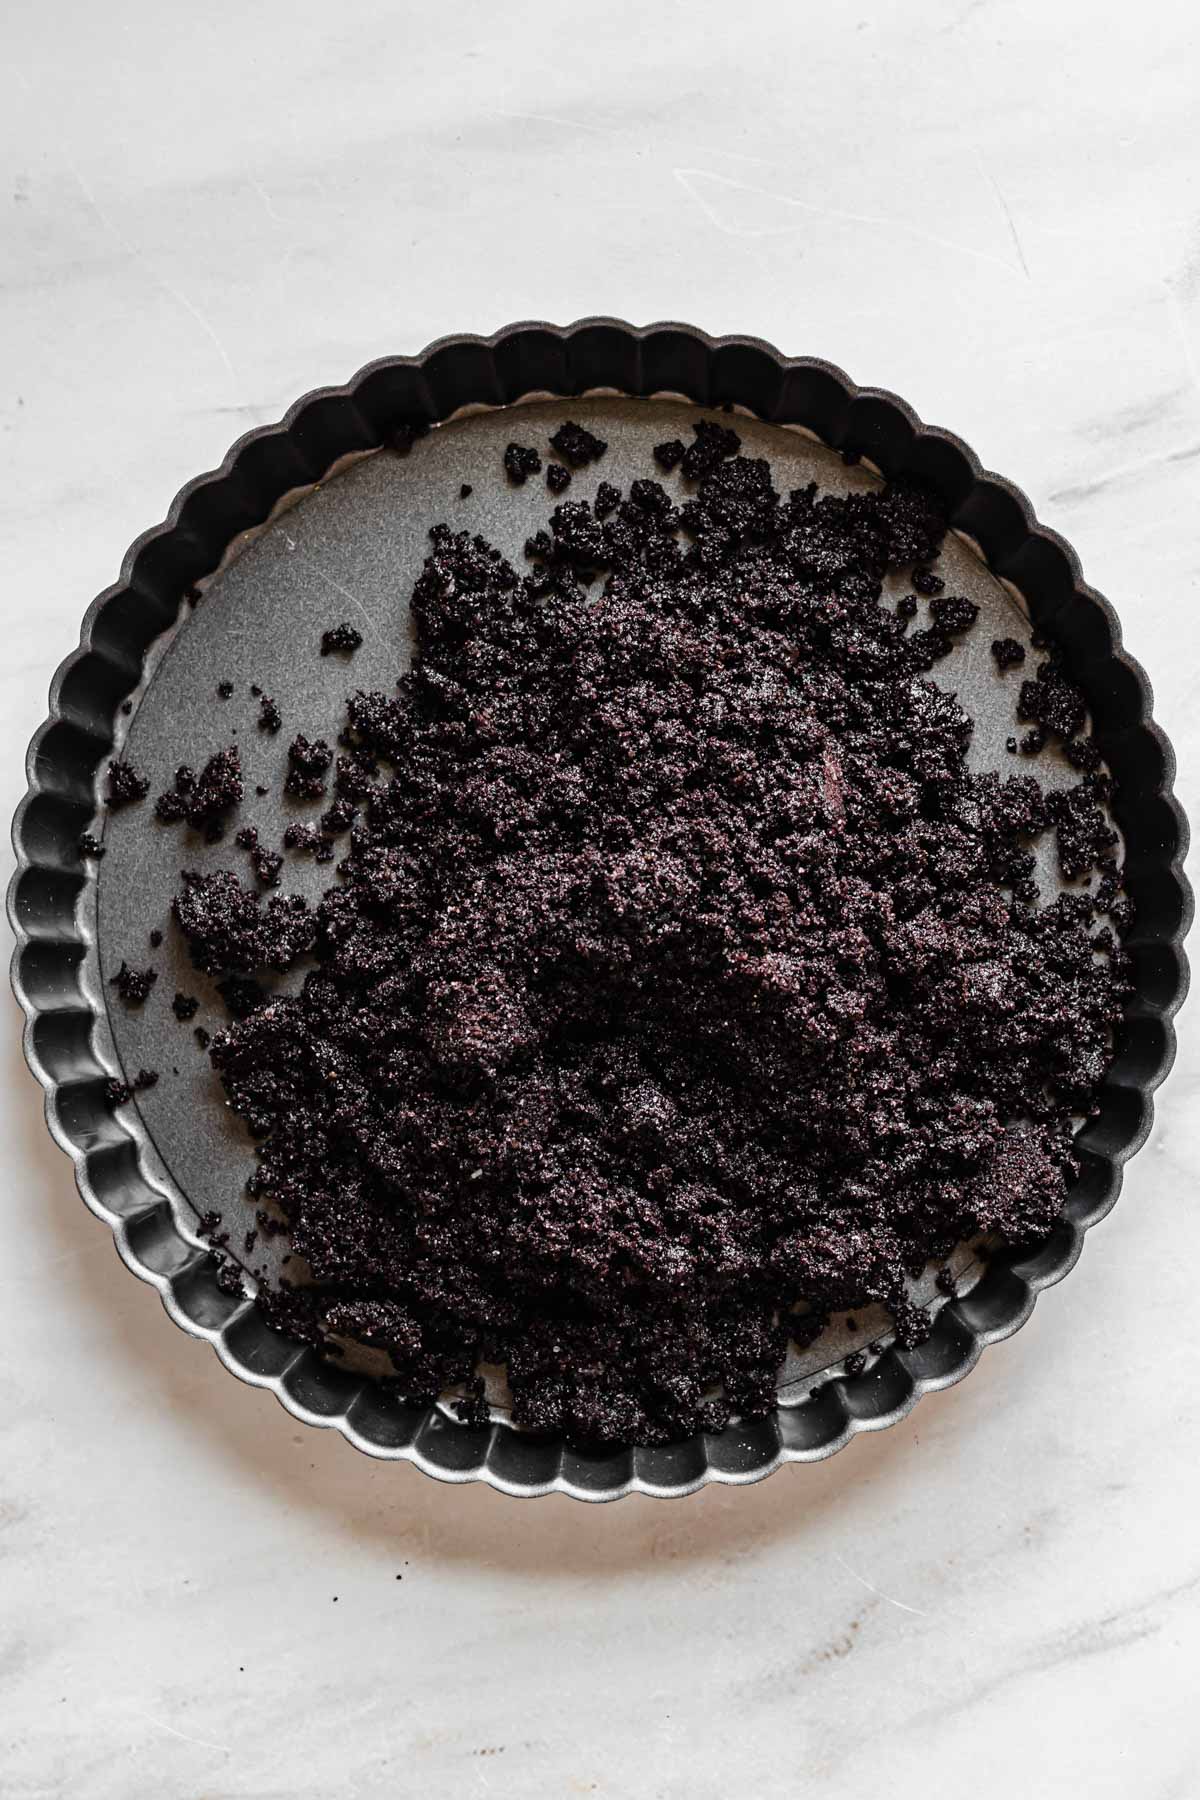 Oreo crumbs in a tart pan.